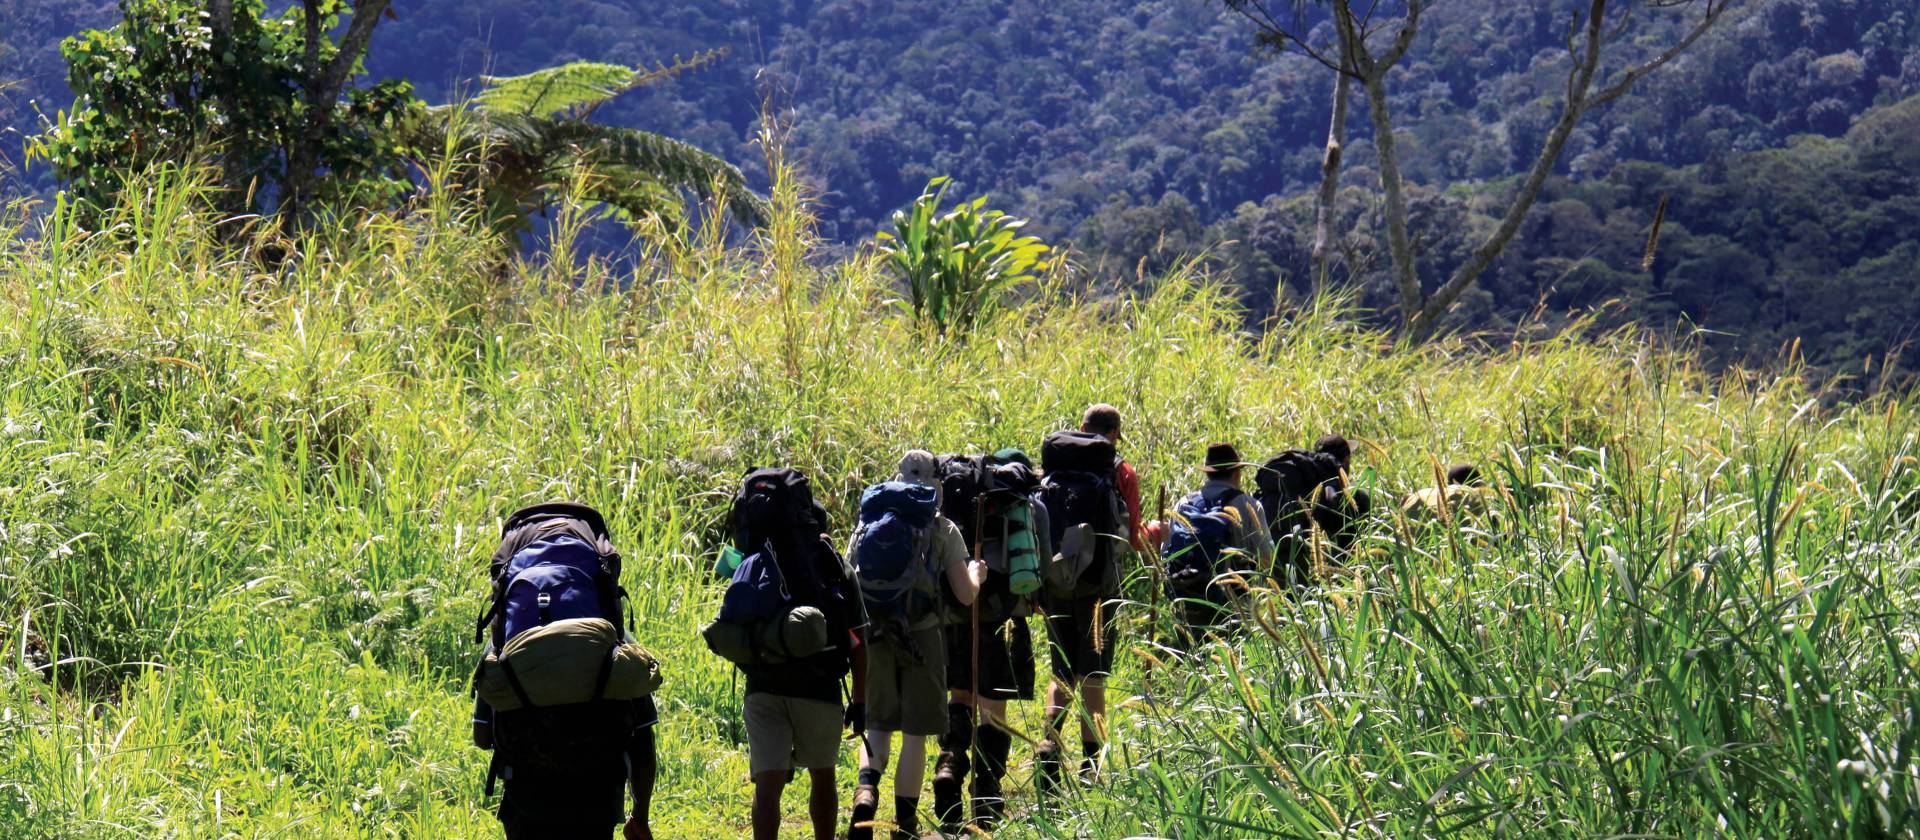 Trekking through the verdant scenery of Papua New Guinea | Ken Harris